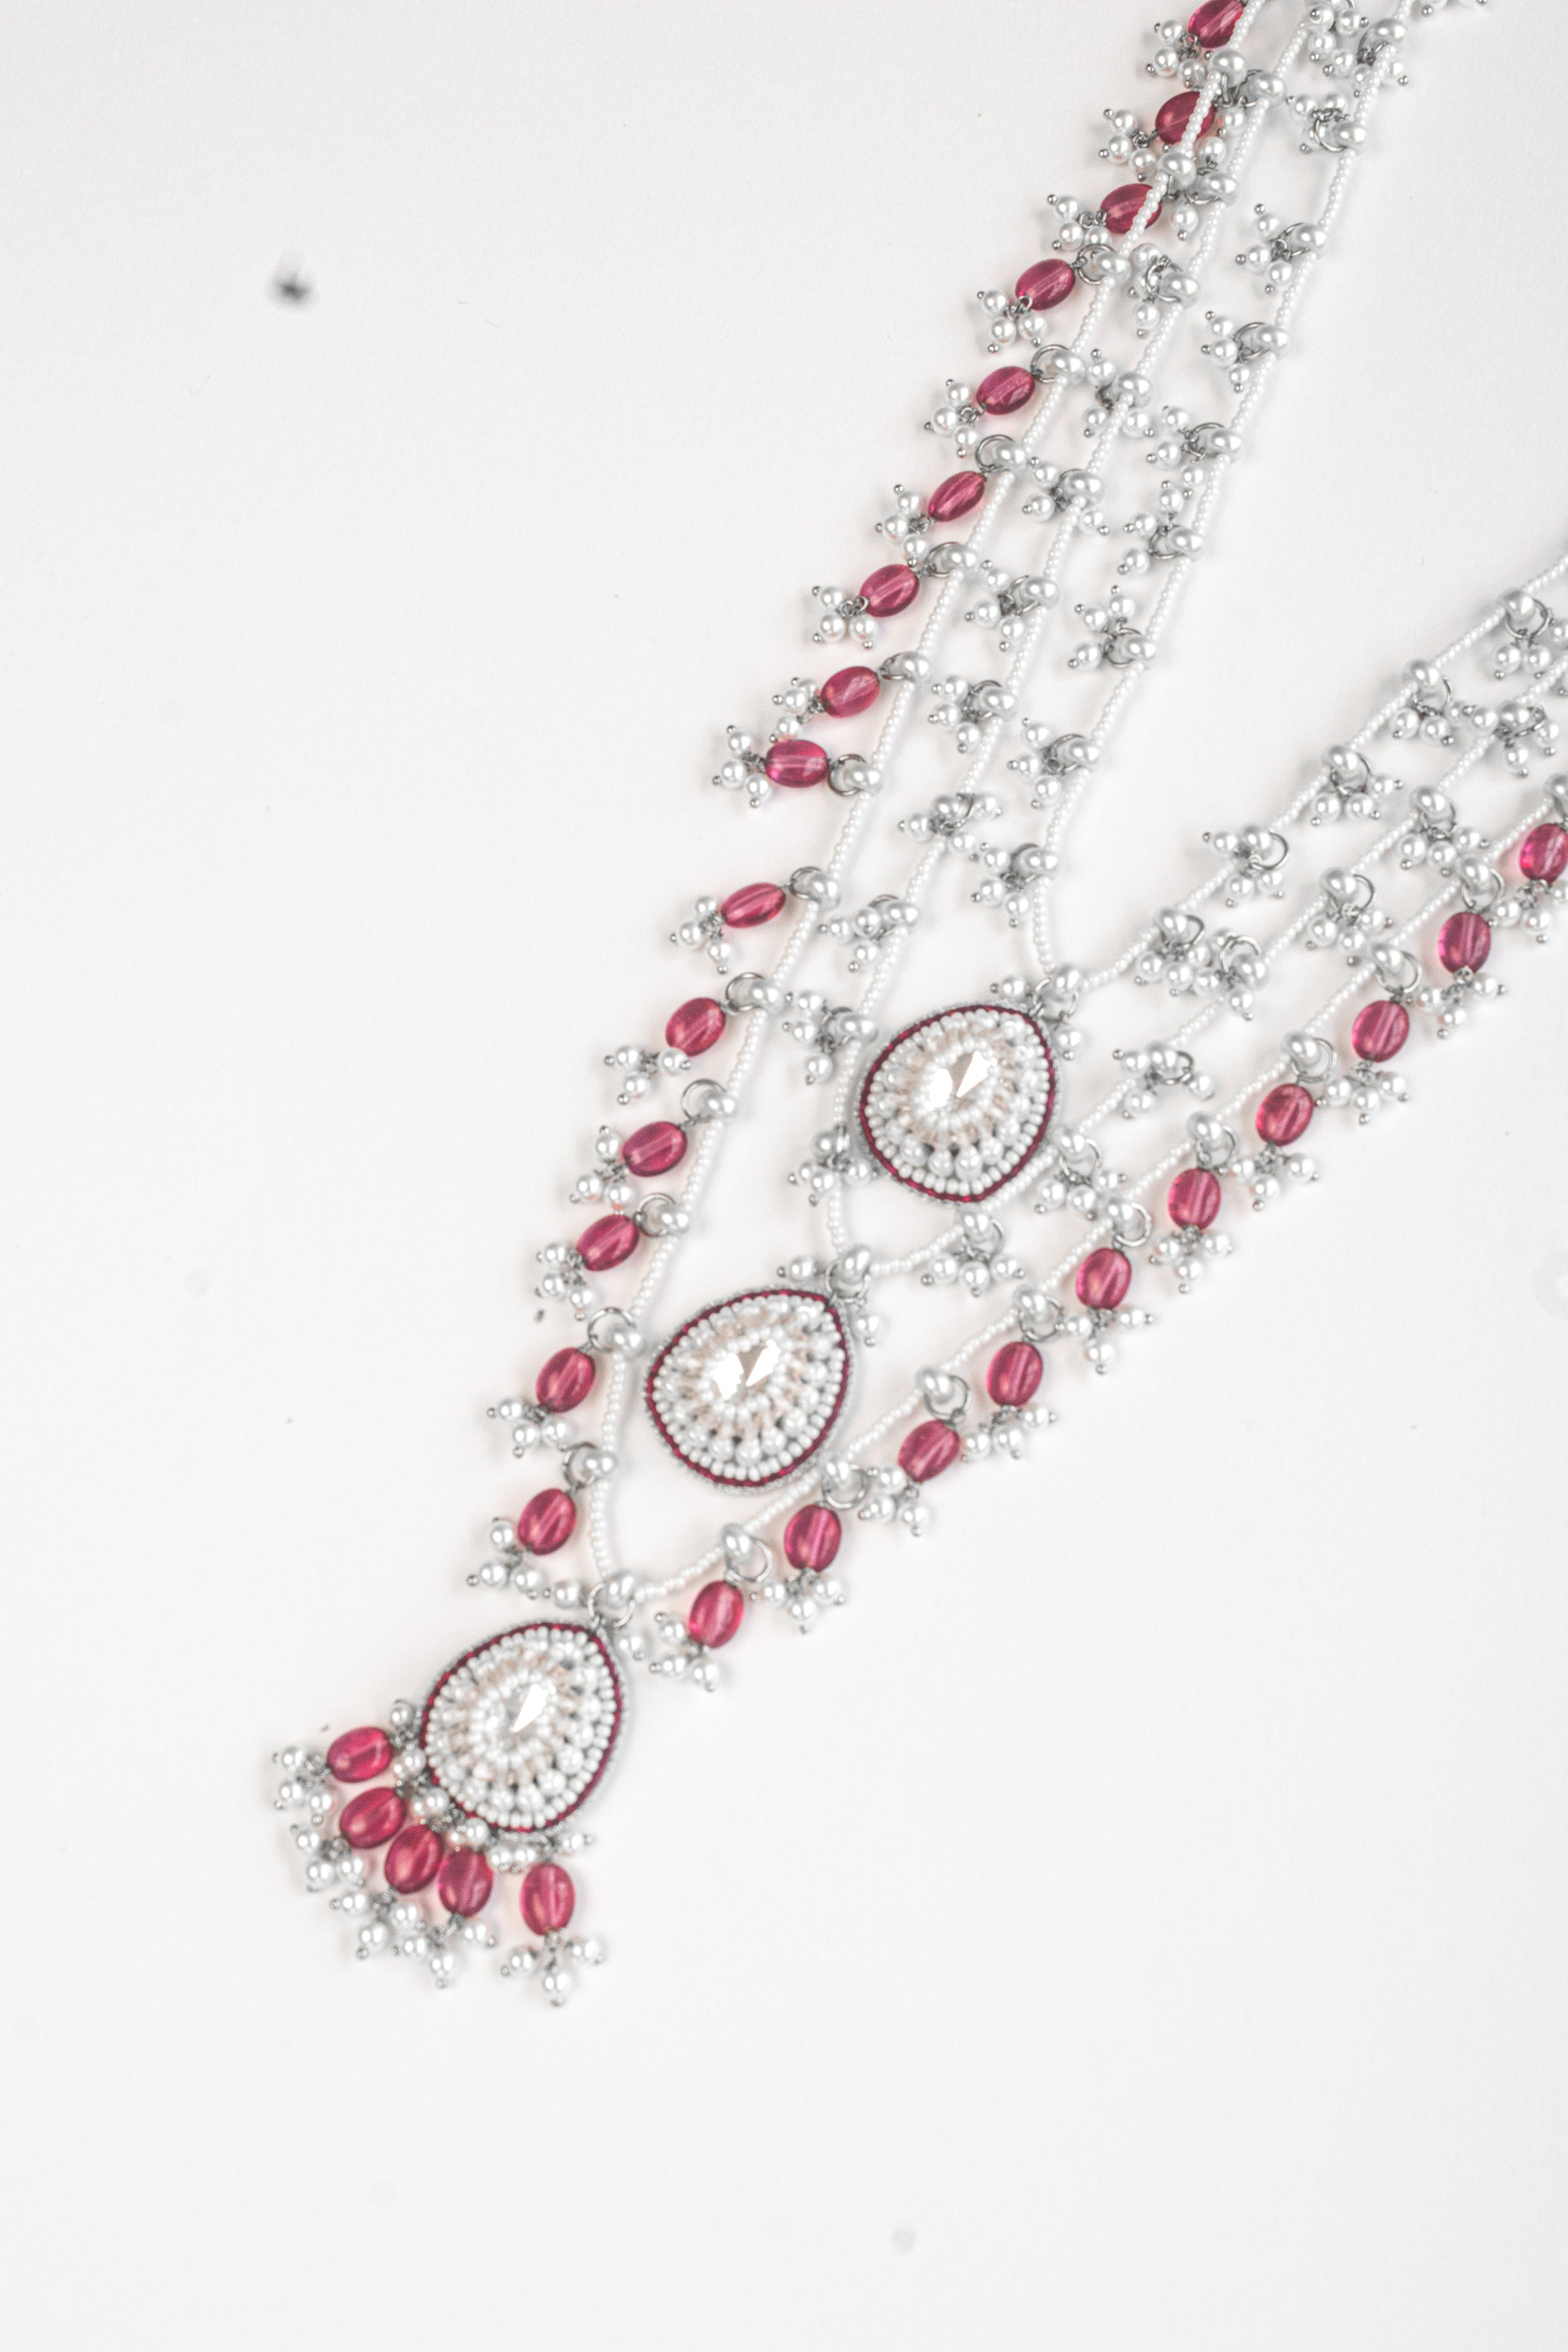 Amama,Trellis Layered Necklace in Pink Quartz